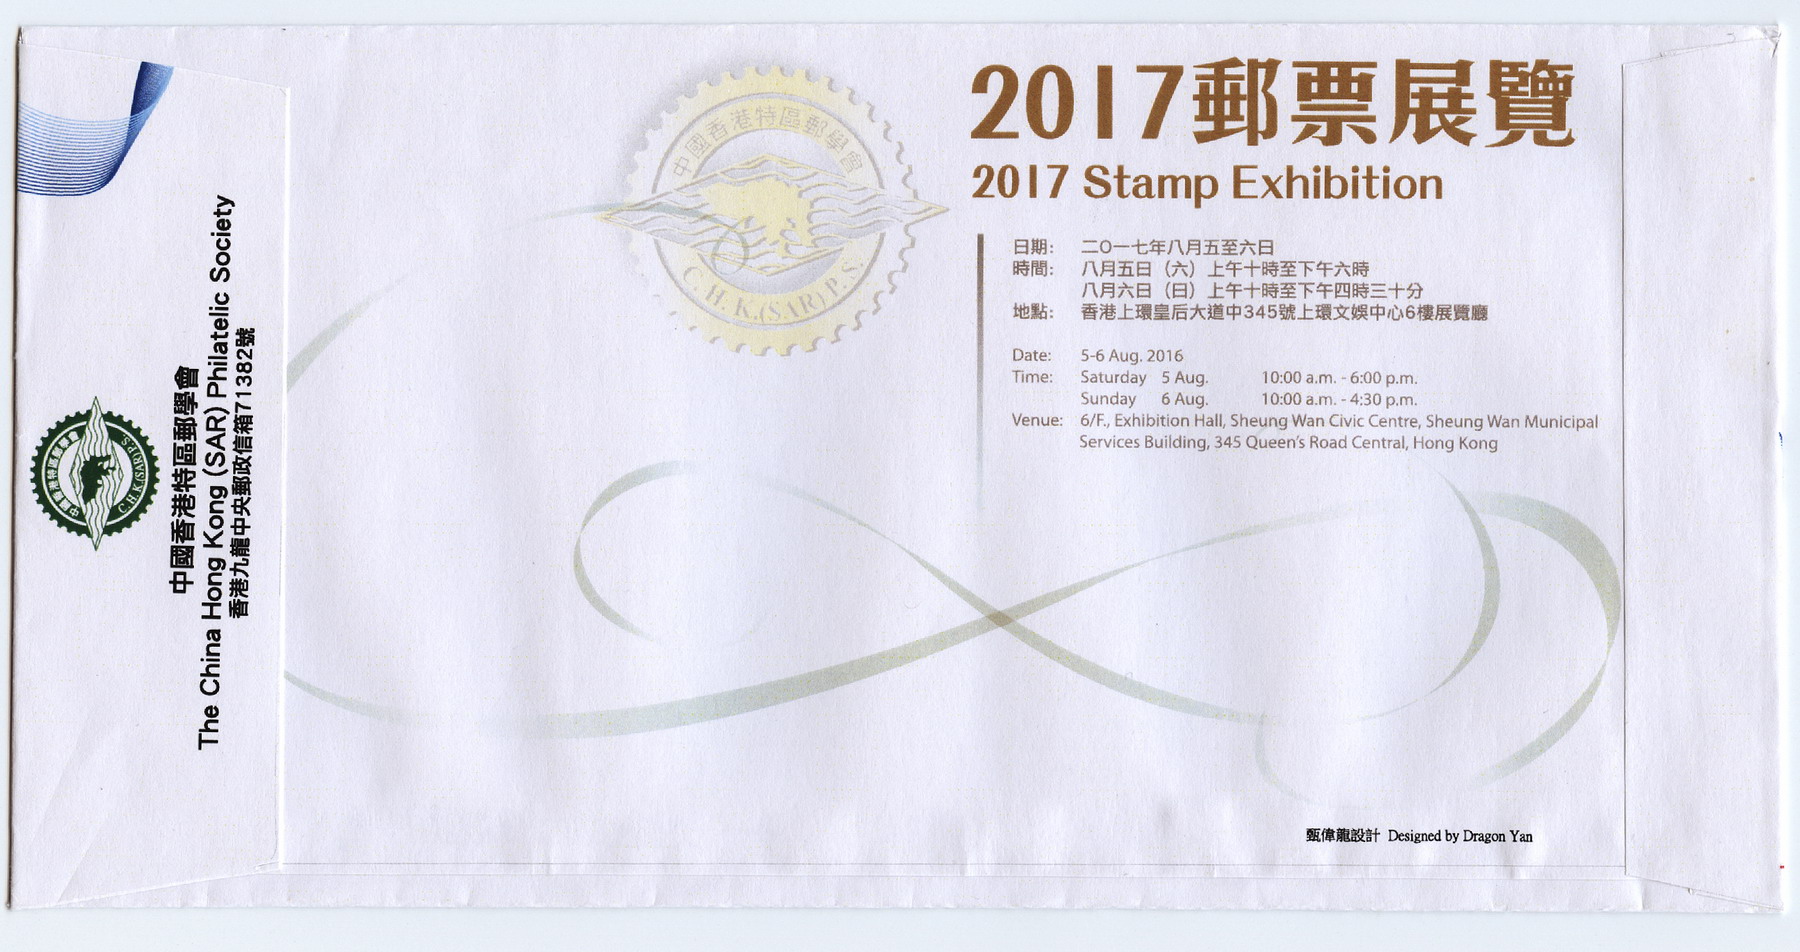 2017香港特区邮票展览纪念封-2_resize.jpg